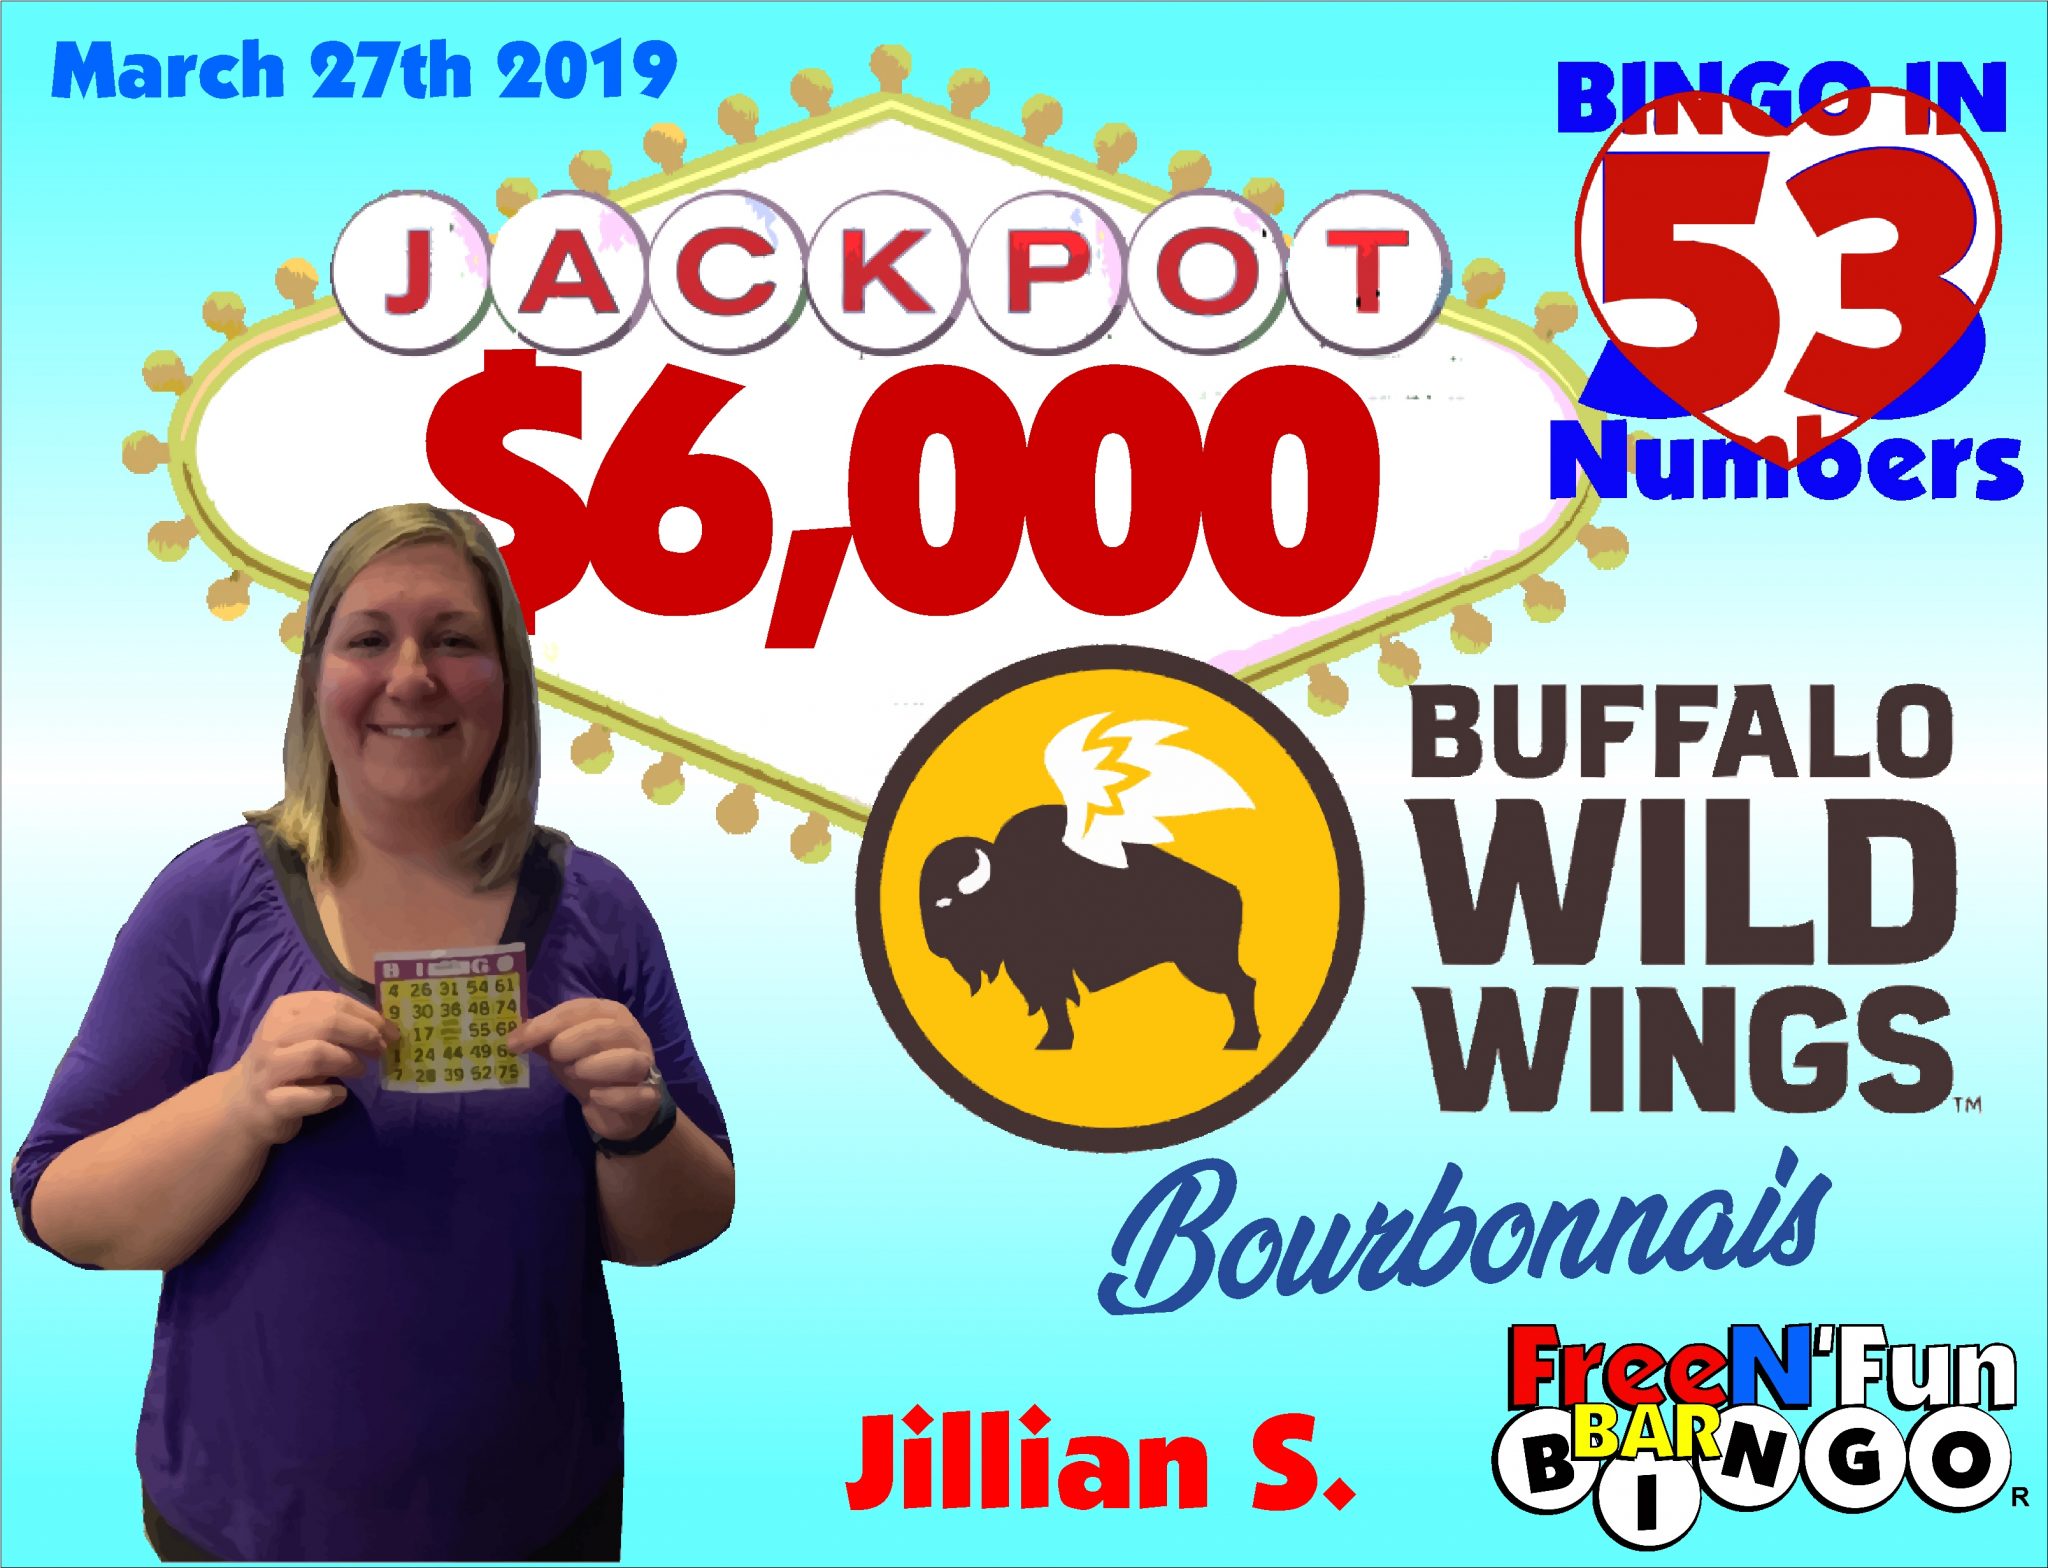 Jackpot Winner 2019 Jillian